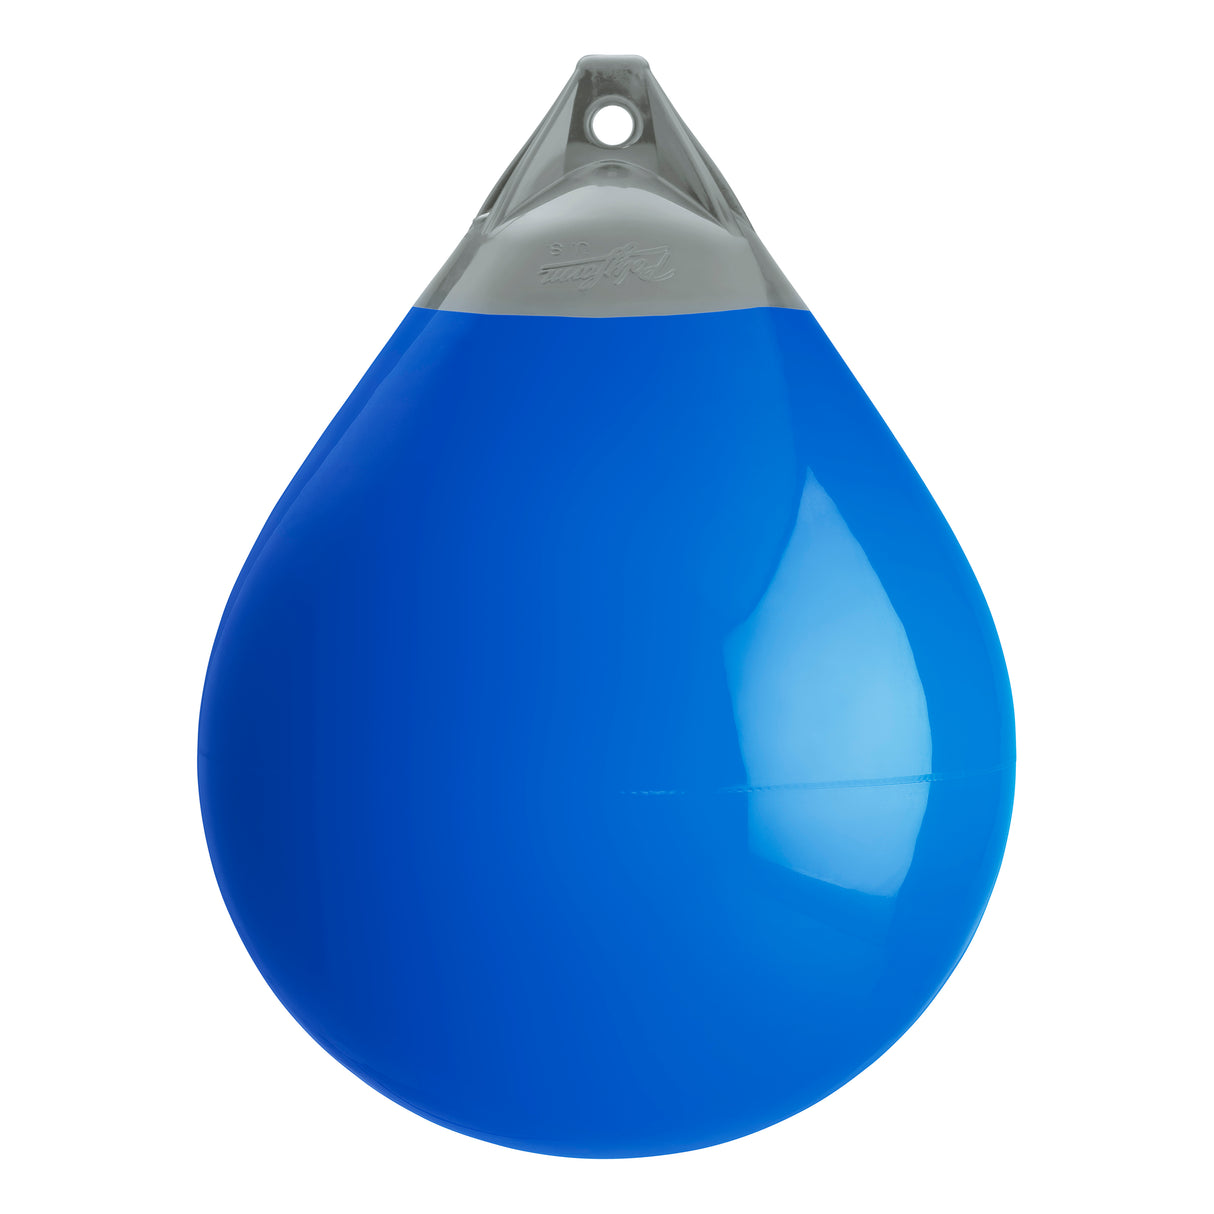 Blue buoy with Grey-Top, Polyform A-5